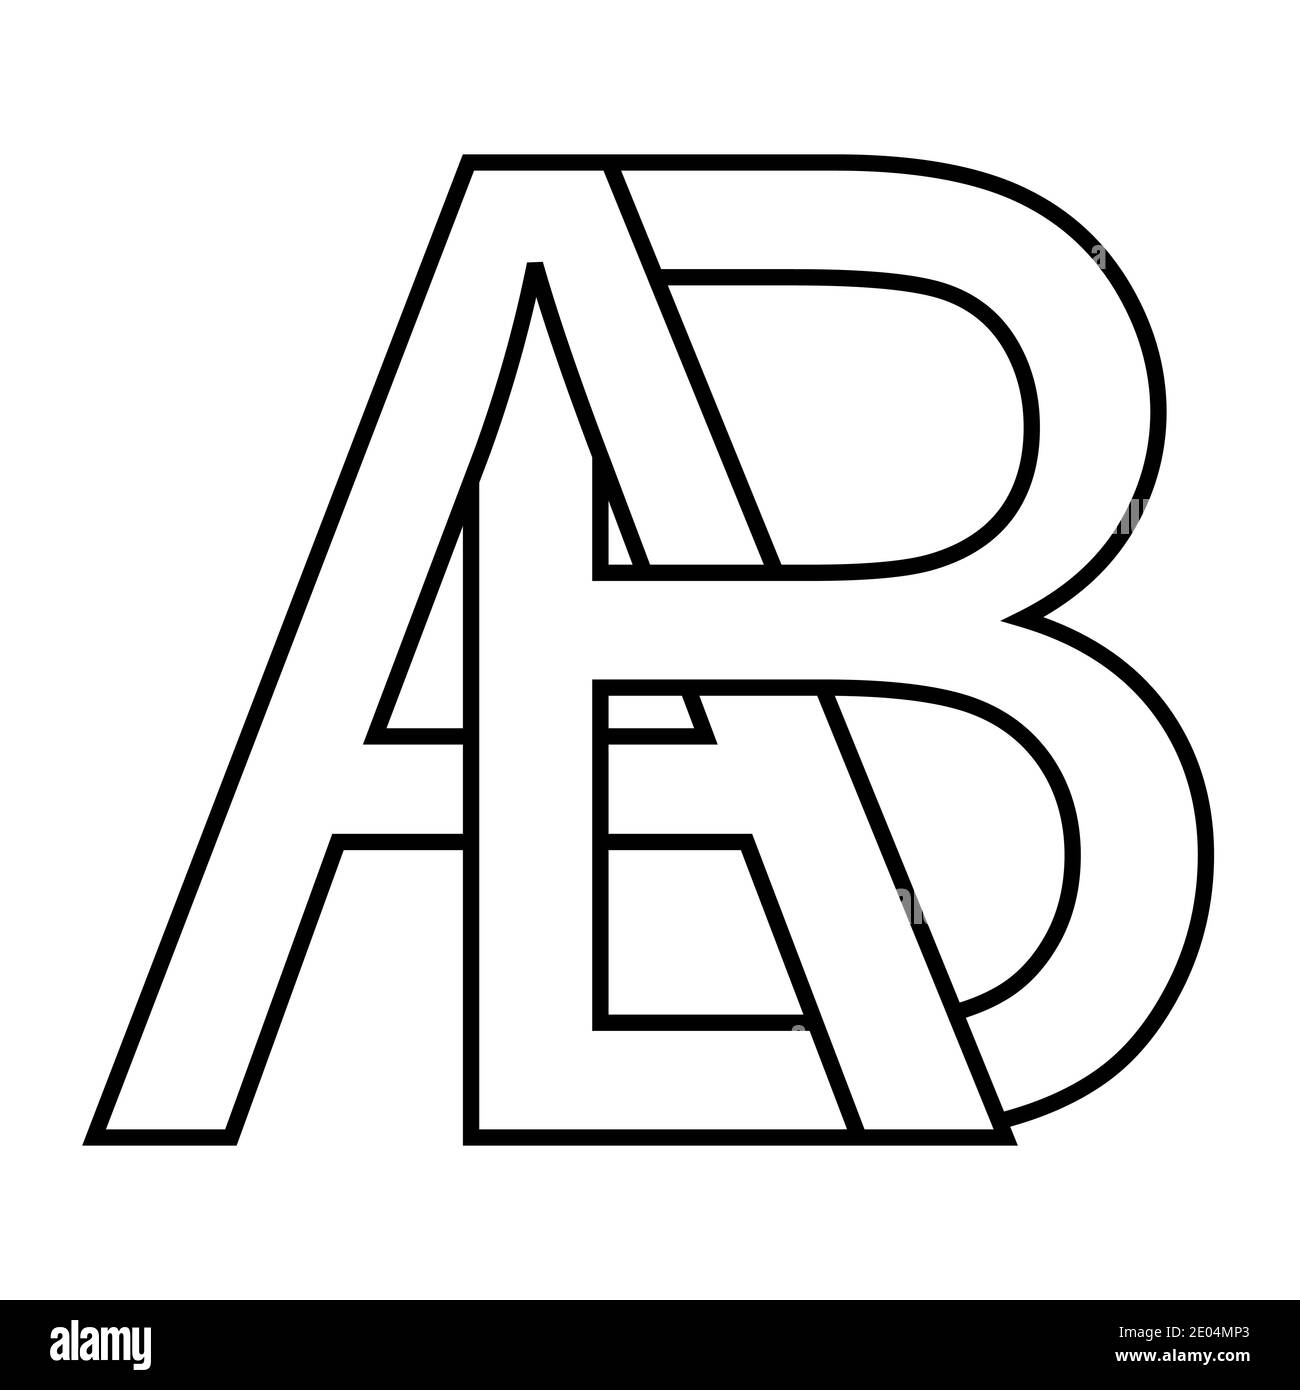 Icona logo ab segno due lettere interlacciate VETTORE A B. logo lettere maiuscole modello alfabeto ab Illustrazione Vettoriale